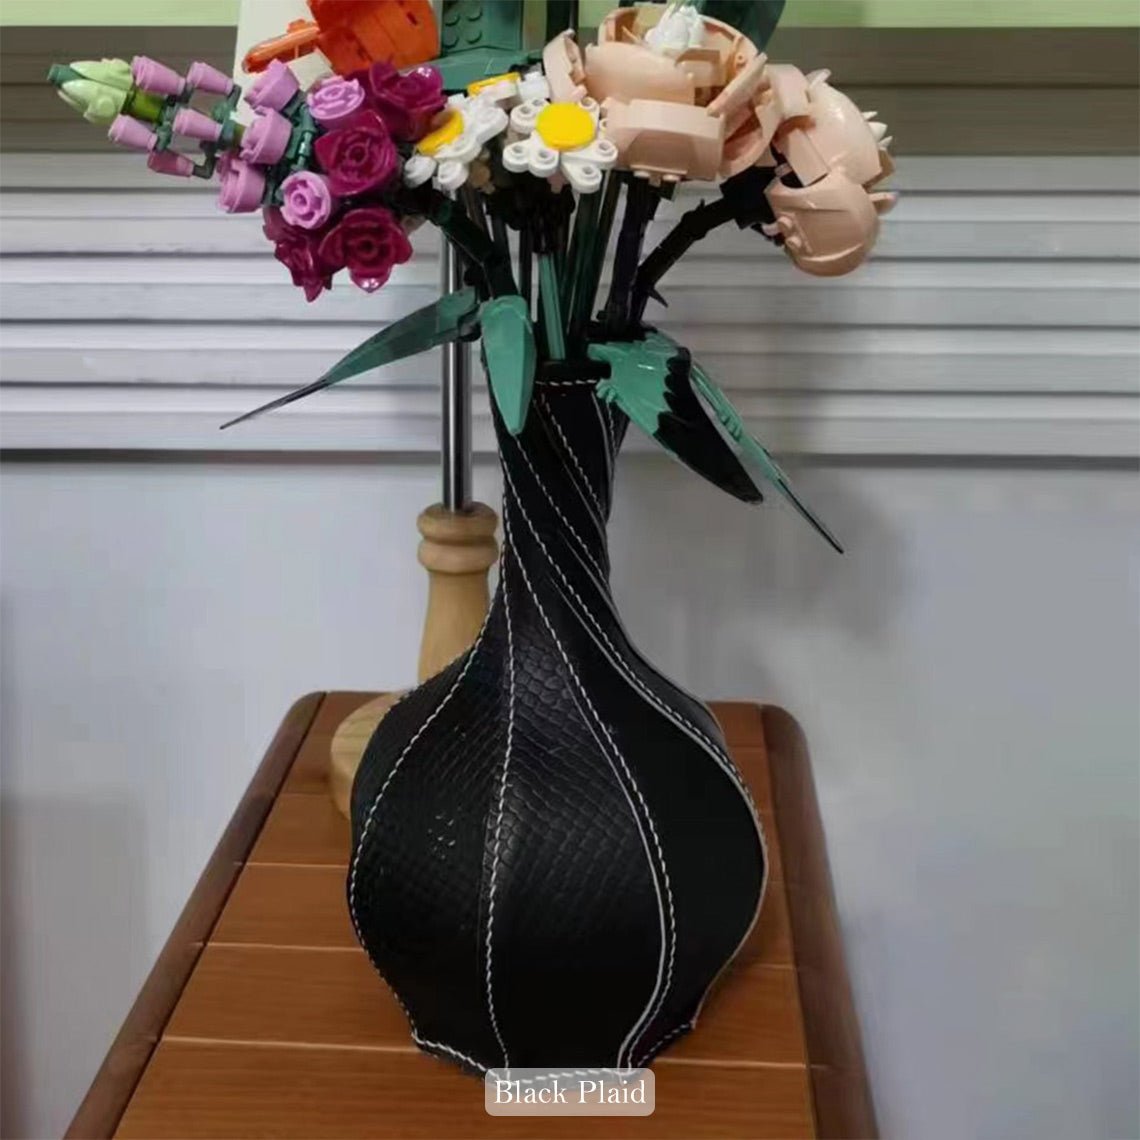 POPSEWING® Homedecor Leather Vase DIY Kit